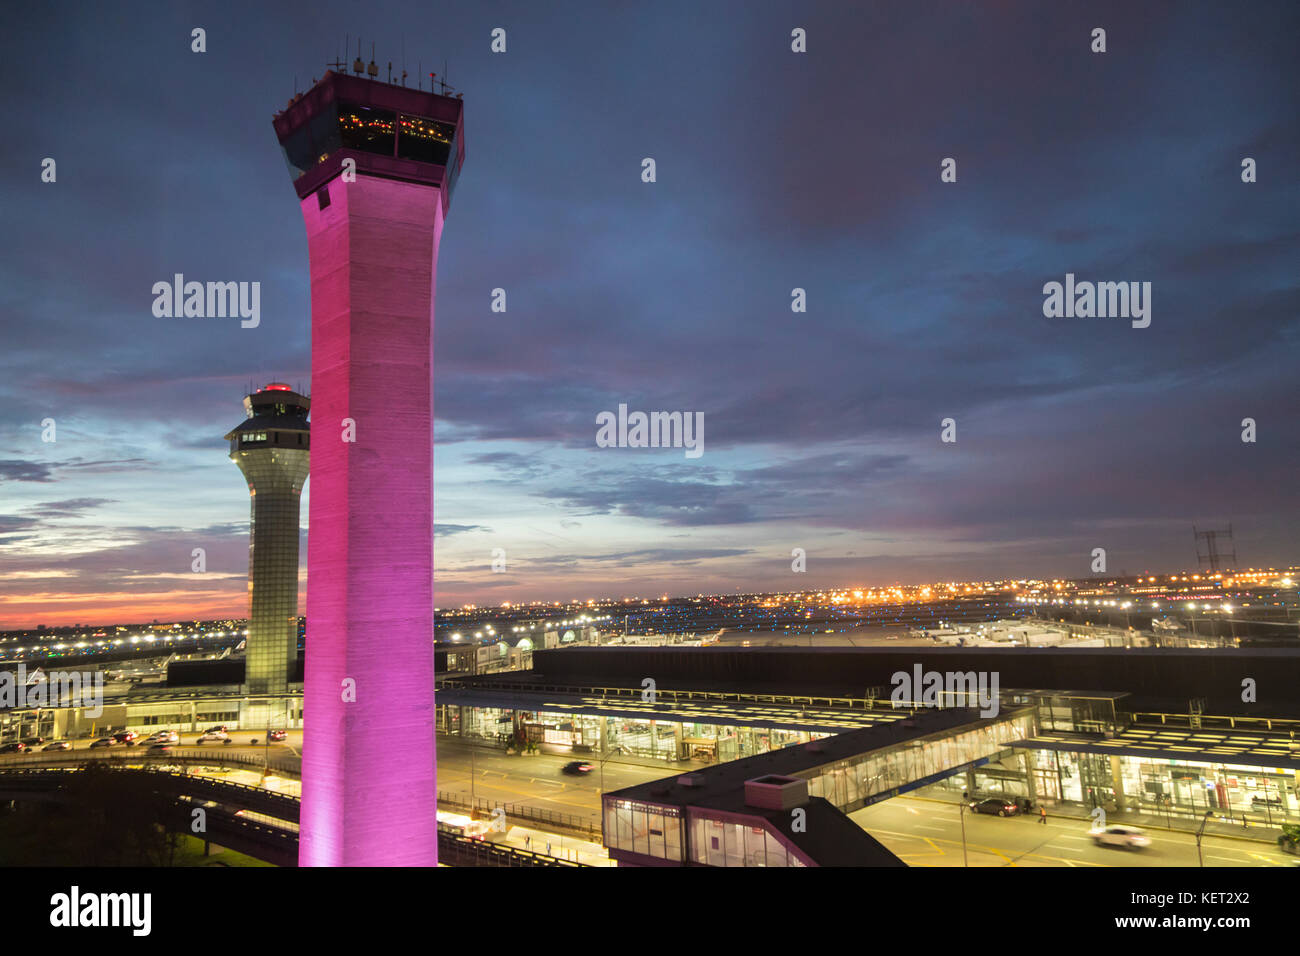 Chicago, Illinois - deux de l'aéroport international O'Hare's tours de contrôle à l'aube. Banque D'Images